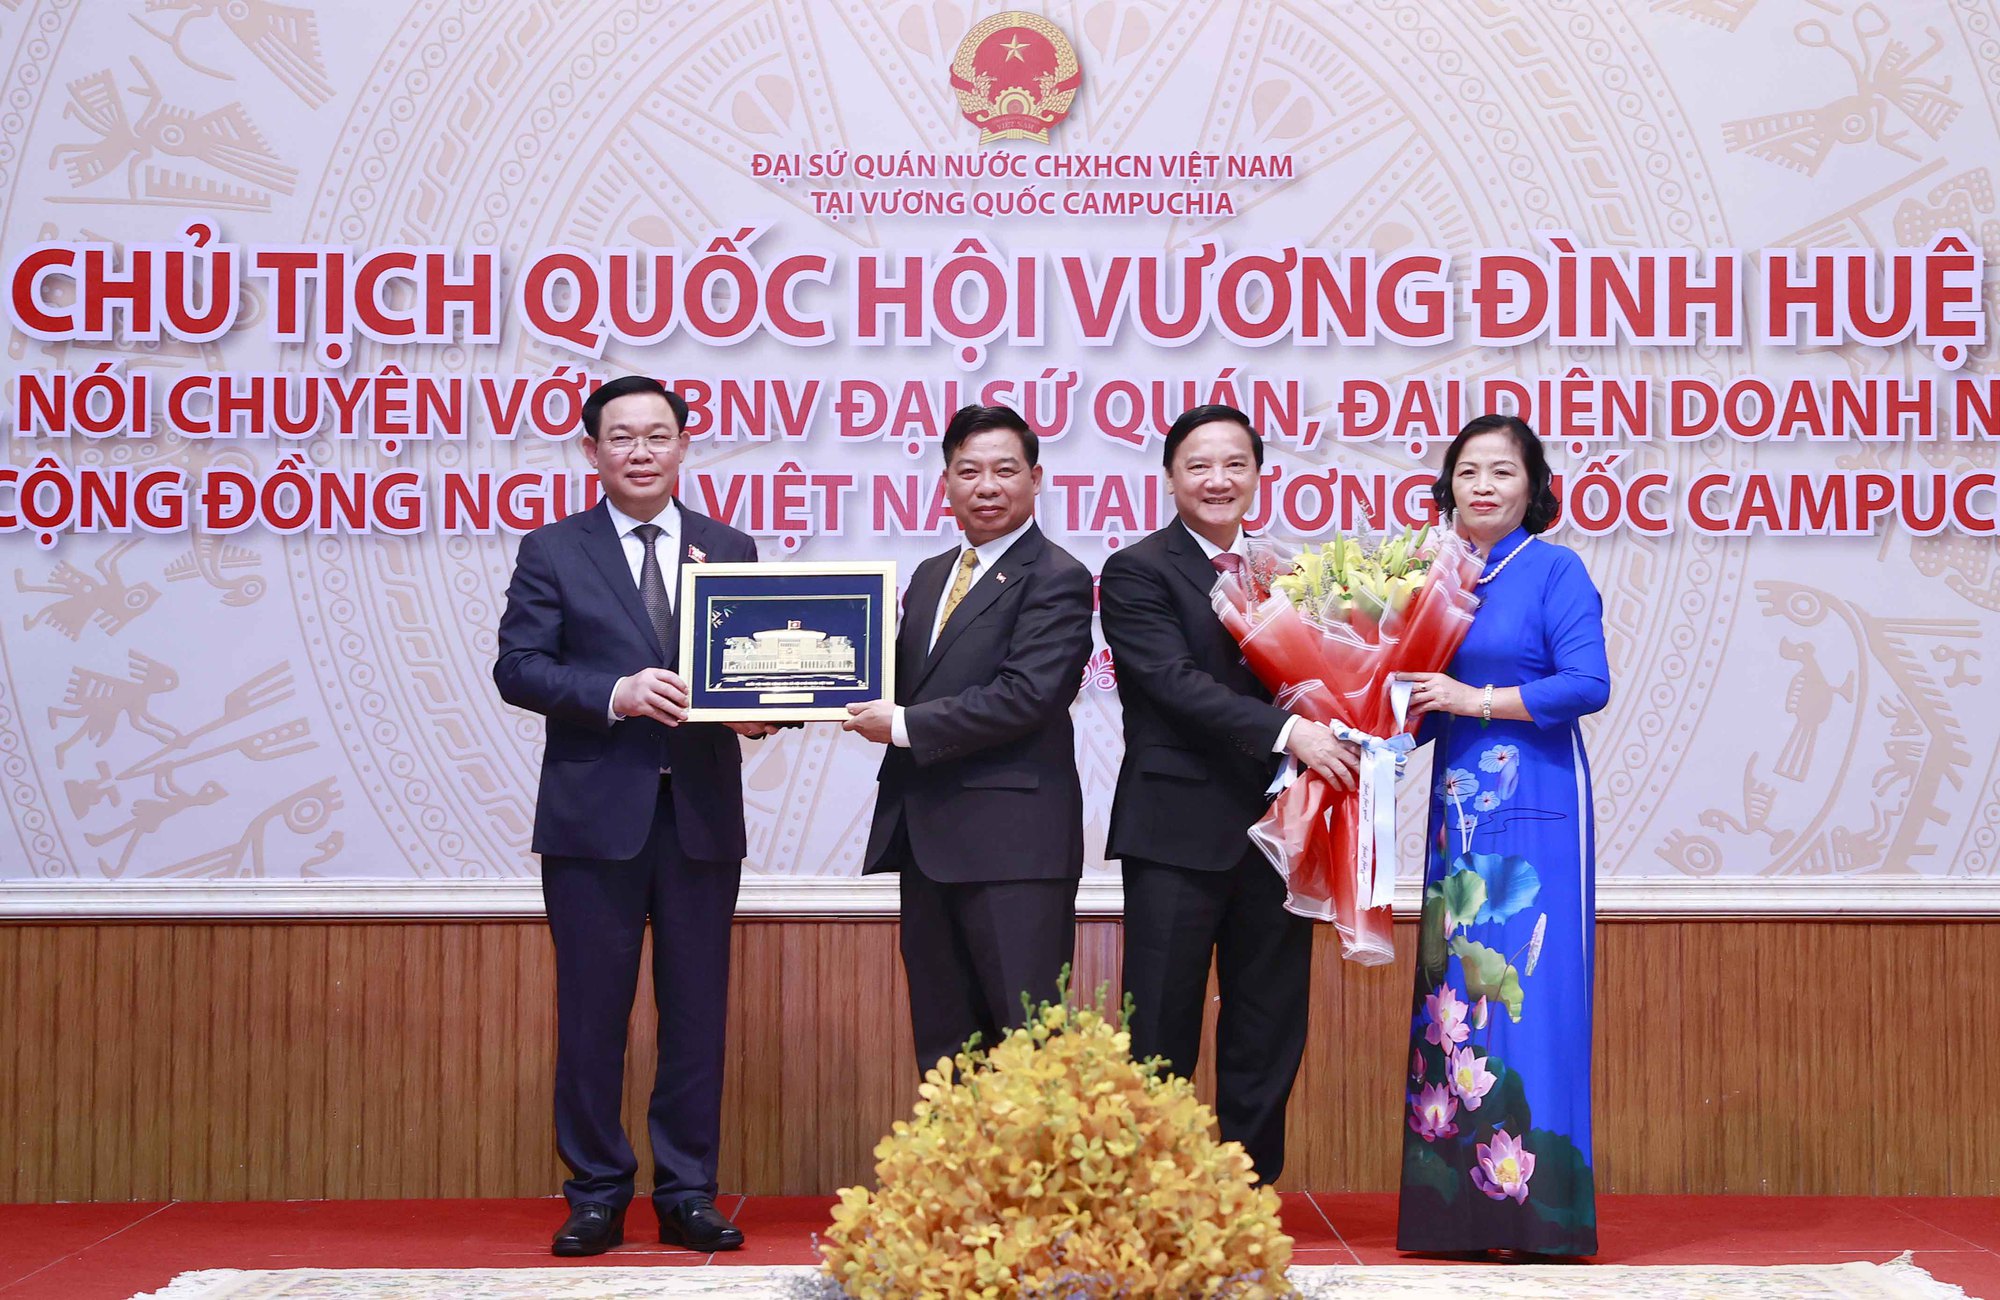 Chủ tịch Quốc hội Vương Đình Huệ gặp cộng đồng người Việt Nam tại Campuchia - Ảnh 12.